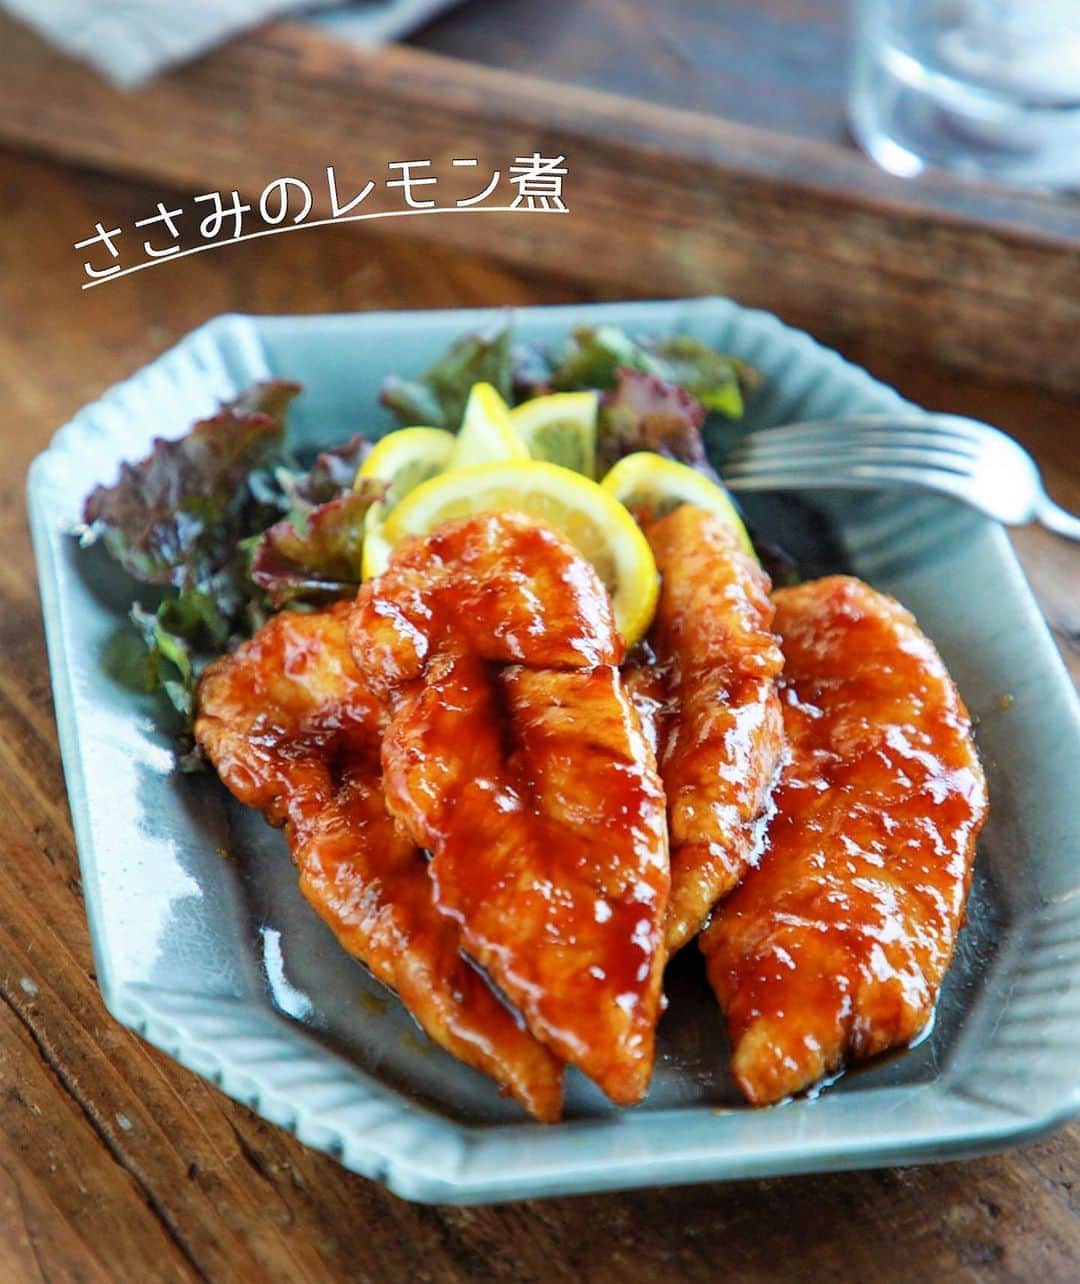 Mizuki【料理ブロガー・簡単レシピ】さんのインスタグラム写真 - (Mizuki【料理ブロガー・簡単レシピ】Instagram)「・﻿ 【レシピ】ーーーーーーーーーーーー﻿ ♡給食で人気♡ささみのレモン煮♡﻿ ーーーーーーーーーーーーーーーーー﻿ ﻿ ﻿ ﻿ おはようございます(*^^*)﻿ ﻿ 今日ご紹介させていただくのは﻿ ささみのレモン煮♡﻿ カラっと揚げ焼きにしたささみに﻿ レモン風味の甘辛だれをからめた﻿ 人気の給食メニューです(*´艸`)﻿ (煮ないけどレモン煮🍋)﻿ ﻿ 少ない油でできる上に﻿ たれはレンチンするだけ！﻿ とっても簡単にできるので﻿ お気軽にお試し下さいね(*^^*)﻿ ﻿ ﻿ ﻿ ーーーーーーーーーーーーーーーーーーーー﻿ 【2〜3人分】﻿ ささみ...4〜5本﻿ 酒...小1﻿ 片栗粉...適量﻿ サラダ油...適量﻿ ●砂糖・醤油...各大1.5﻿ ●水・みりん...各大1﻿ ●レモン汁...小1﻿ ﻿ 1.ささみは真ん中に切り込みを入れ、酒を揉み込み片栗粉をまぶす。﻿ 2.フライパンに5mmのサラダ油を中火で熱し、1を入れて返しながら4〜5分揚げ焼きにする。その間に耐熱ボウルに●を入れ、600Wのレンジで2分加熱する(たれ)。﻿ 3.ささみに火が通ったら油を切り、たれのボウルに入れてからめる。﻿ ーーーーーーーーーーーーーーーーーーーー﻿ ﻿ ﻿ ﻿ 《ポイント》﻿ ♦︎ささみの筋が気になる方は切り込みを入れた時に除いて下さい♩﻿ ♦︎たれはよくからめるとテリテリに仕上がります♩小さなお子さんや薄味がお好みの方はさっとからめる程度でOK！(←より給食っぽい！)﻿ ﻿ ﻿ ﻿ ﻿ ﻿ ﻿ ﻿ ＿＿＿＿＿＿＿＿＿＿＿＿＿＿＿＿＿＿＿﻿ 📕7刷重版しました📕﻿ 簡単・時短！ 毎日のごはんがラクになる﻿ ✨🦋 【 #Mizukiの今どき和食 】🦋✨﻿ ＿＿＿＿＿＿＿＿＿＿＿＿＿＿＿＿＿＿＿﻿ なるべく少ない材料で﻿ 手間も時間も省きながら﻿ 簡単にできるおいしい和食レシピ♩﻿ 簡単に失敗なくマスターできる一冊で﻿ もっと気軽に、カジュアルに﻿ 和食を楽しんで下さいね(*^^*)﻿ ＿＿＿＿＿＿＿＿＿＿＿＿＿＿＿＿＿＿＿﻿ ﻿ ﻿ ﻿ ＿＿＿＿＿＿＿＿＿＿＿＿＿＿＿＿＿＿＿﻿ 🎀6刷重版しました🎀﻿ 混ぜて焼くだけ。はじめてでも失敗しない！﻿ 【#ホットケーキミックスのお菓子 】﻿ ﻿ 一冊まるっとホケミスイーツ♩﻿ 普段のおやつから﻿ 特別な日にも使えるレシピを﻿ この一冊に詰め込みました(*^^*)﻿ ホットケーキミックスを使えば﻿ 簡単に本格的なお菓子が作れますよ♡﻿ ＿＿＿＿＿＿＿＿＿＿＿＿＿＿＿＿＿﻿ ﻿ ﻿ ﻿ ﻿ ￣￣￣￣￣￣￣￣￣￣￣￣￣￣￣￣￣￣﻿ レシピを作って下さった際や﻿ レシピ本についてのご投稿には﻿ タグ付け( @mizuki_31cafe )して﻿ お知らせいただけると嬉しいです😊💕﻿ ＿＿＿＿＿＿＿＿＿＿＿＿＿＿＿＿＿＿﻿ ﻿ ﻿ ﻿ ﻿ ﻿ #ささみ#レモン煮#レモン揚げ#揚げない#給食﻿ #Mizuki#簡単レシピ#時短レシピ#節約レシピ#料理#レシピ#フーディーテーブル#マカロニメイト#おうちごはん#デリスタグラマー#料理好きな人と繋がりたい#食べ物#料理記録#おうちごはんlover#写真好きな人と繋がりたい#foodpic#cooking#recipe#lin_stagrammer#foodporn#yummy#ささみのレモン煮m」8月21日 7時01分 - mizuki_31cafe